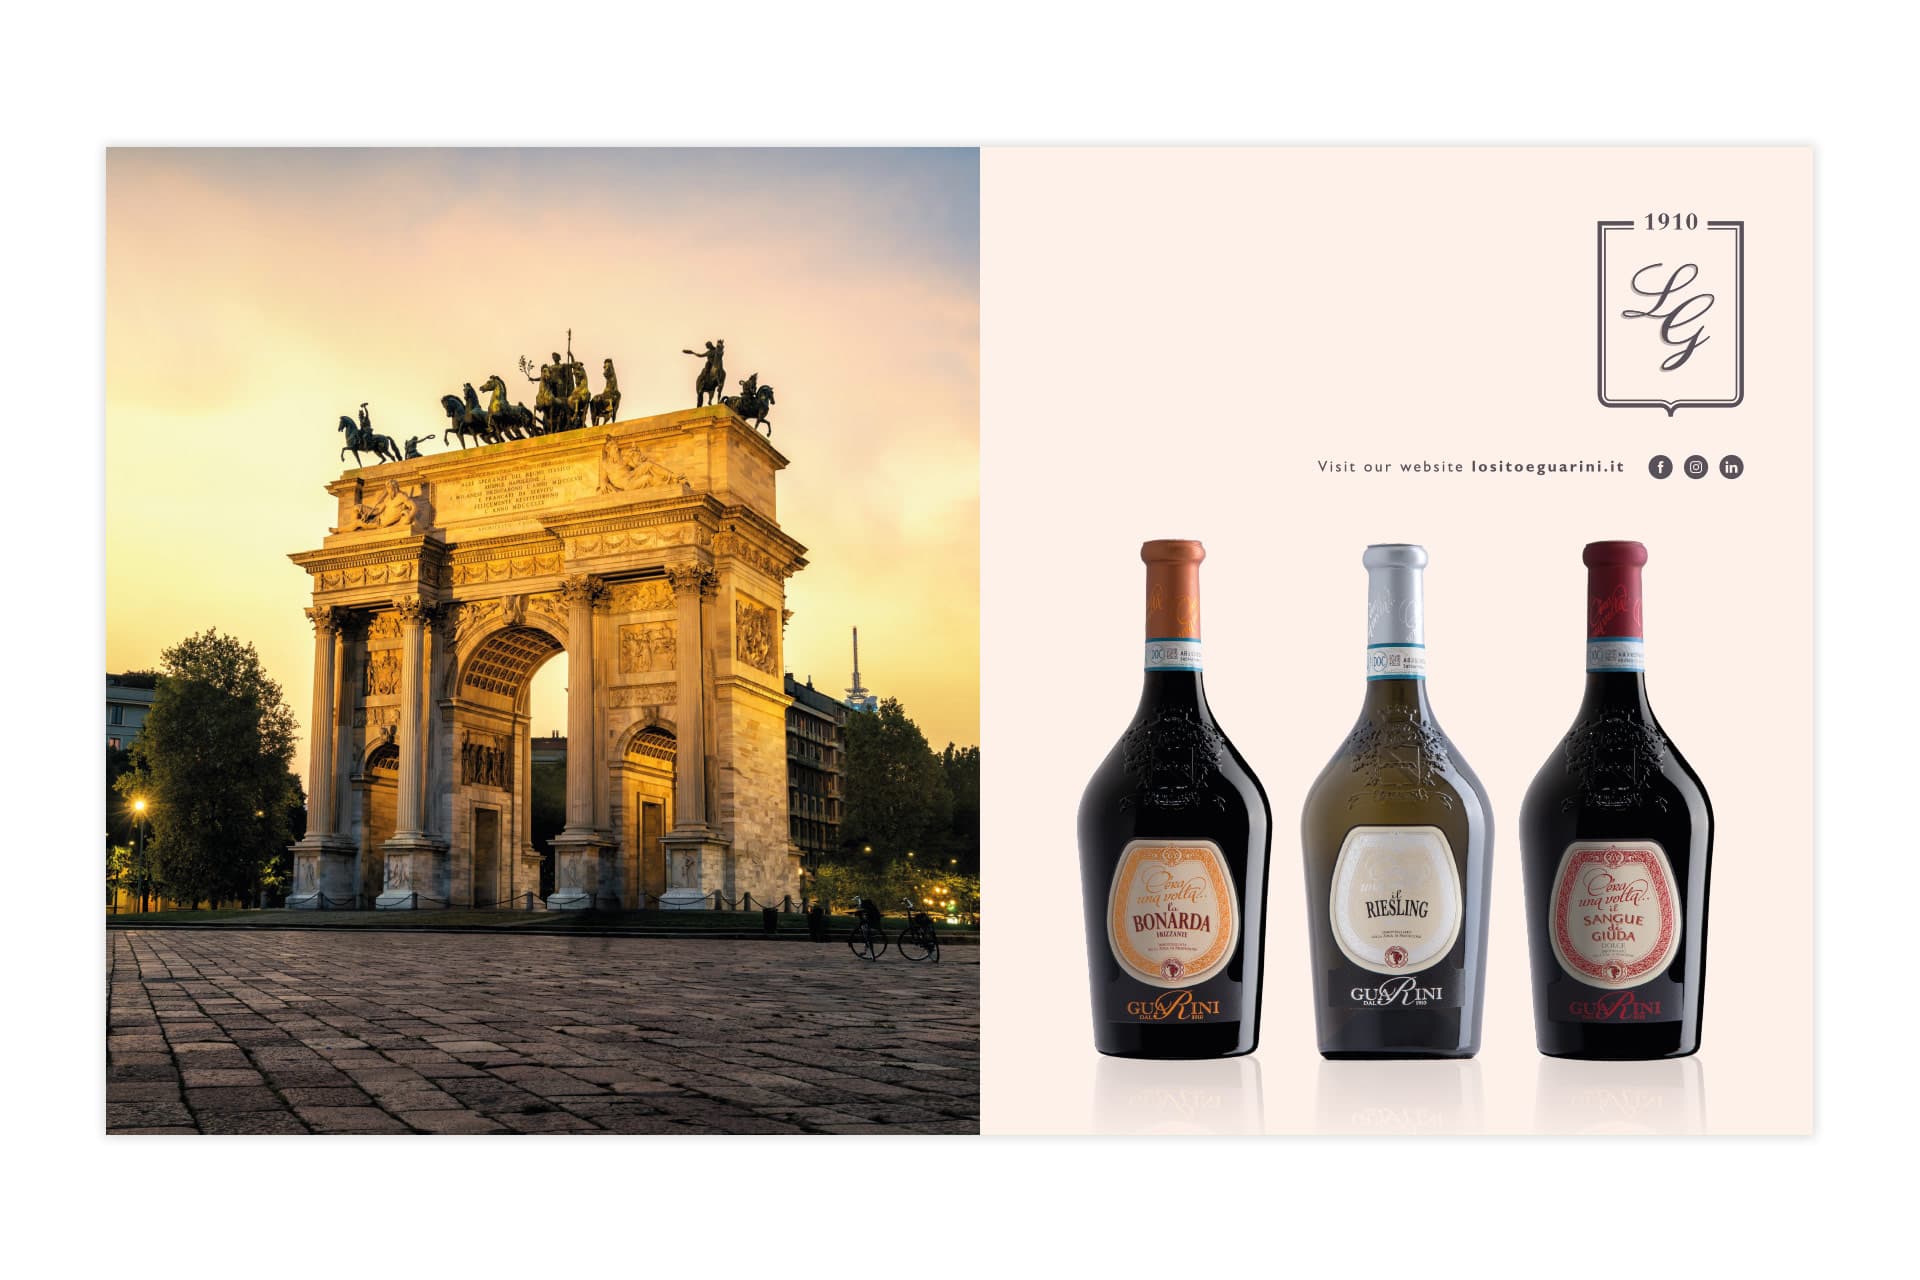 Losito & Guarini - Origine e futuro del vino